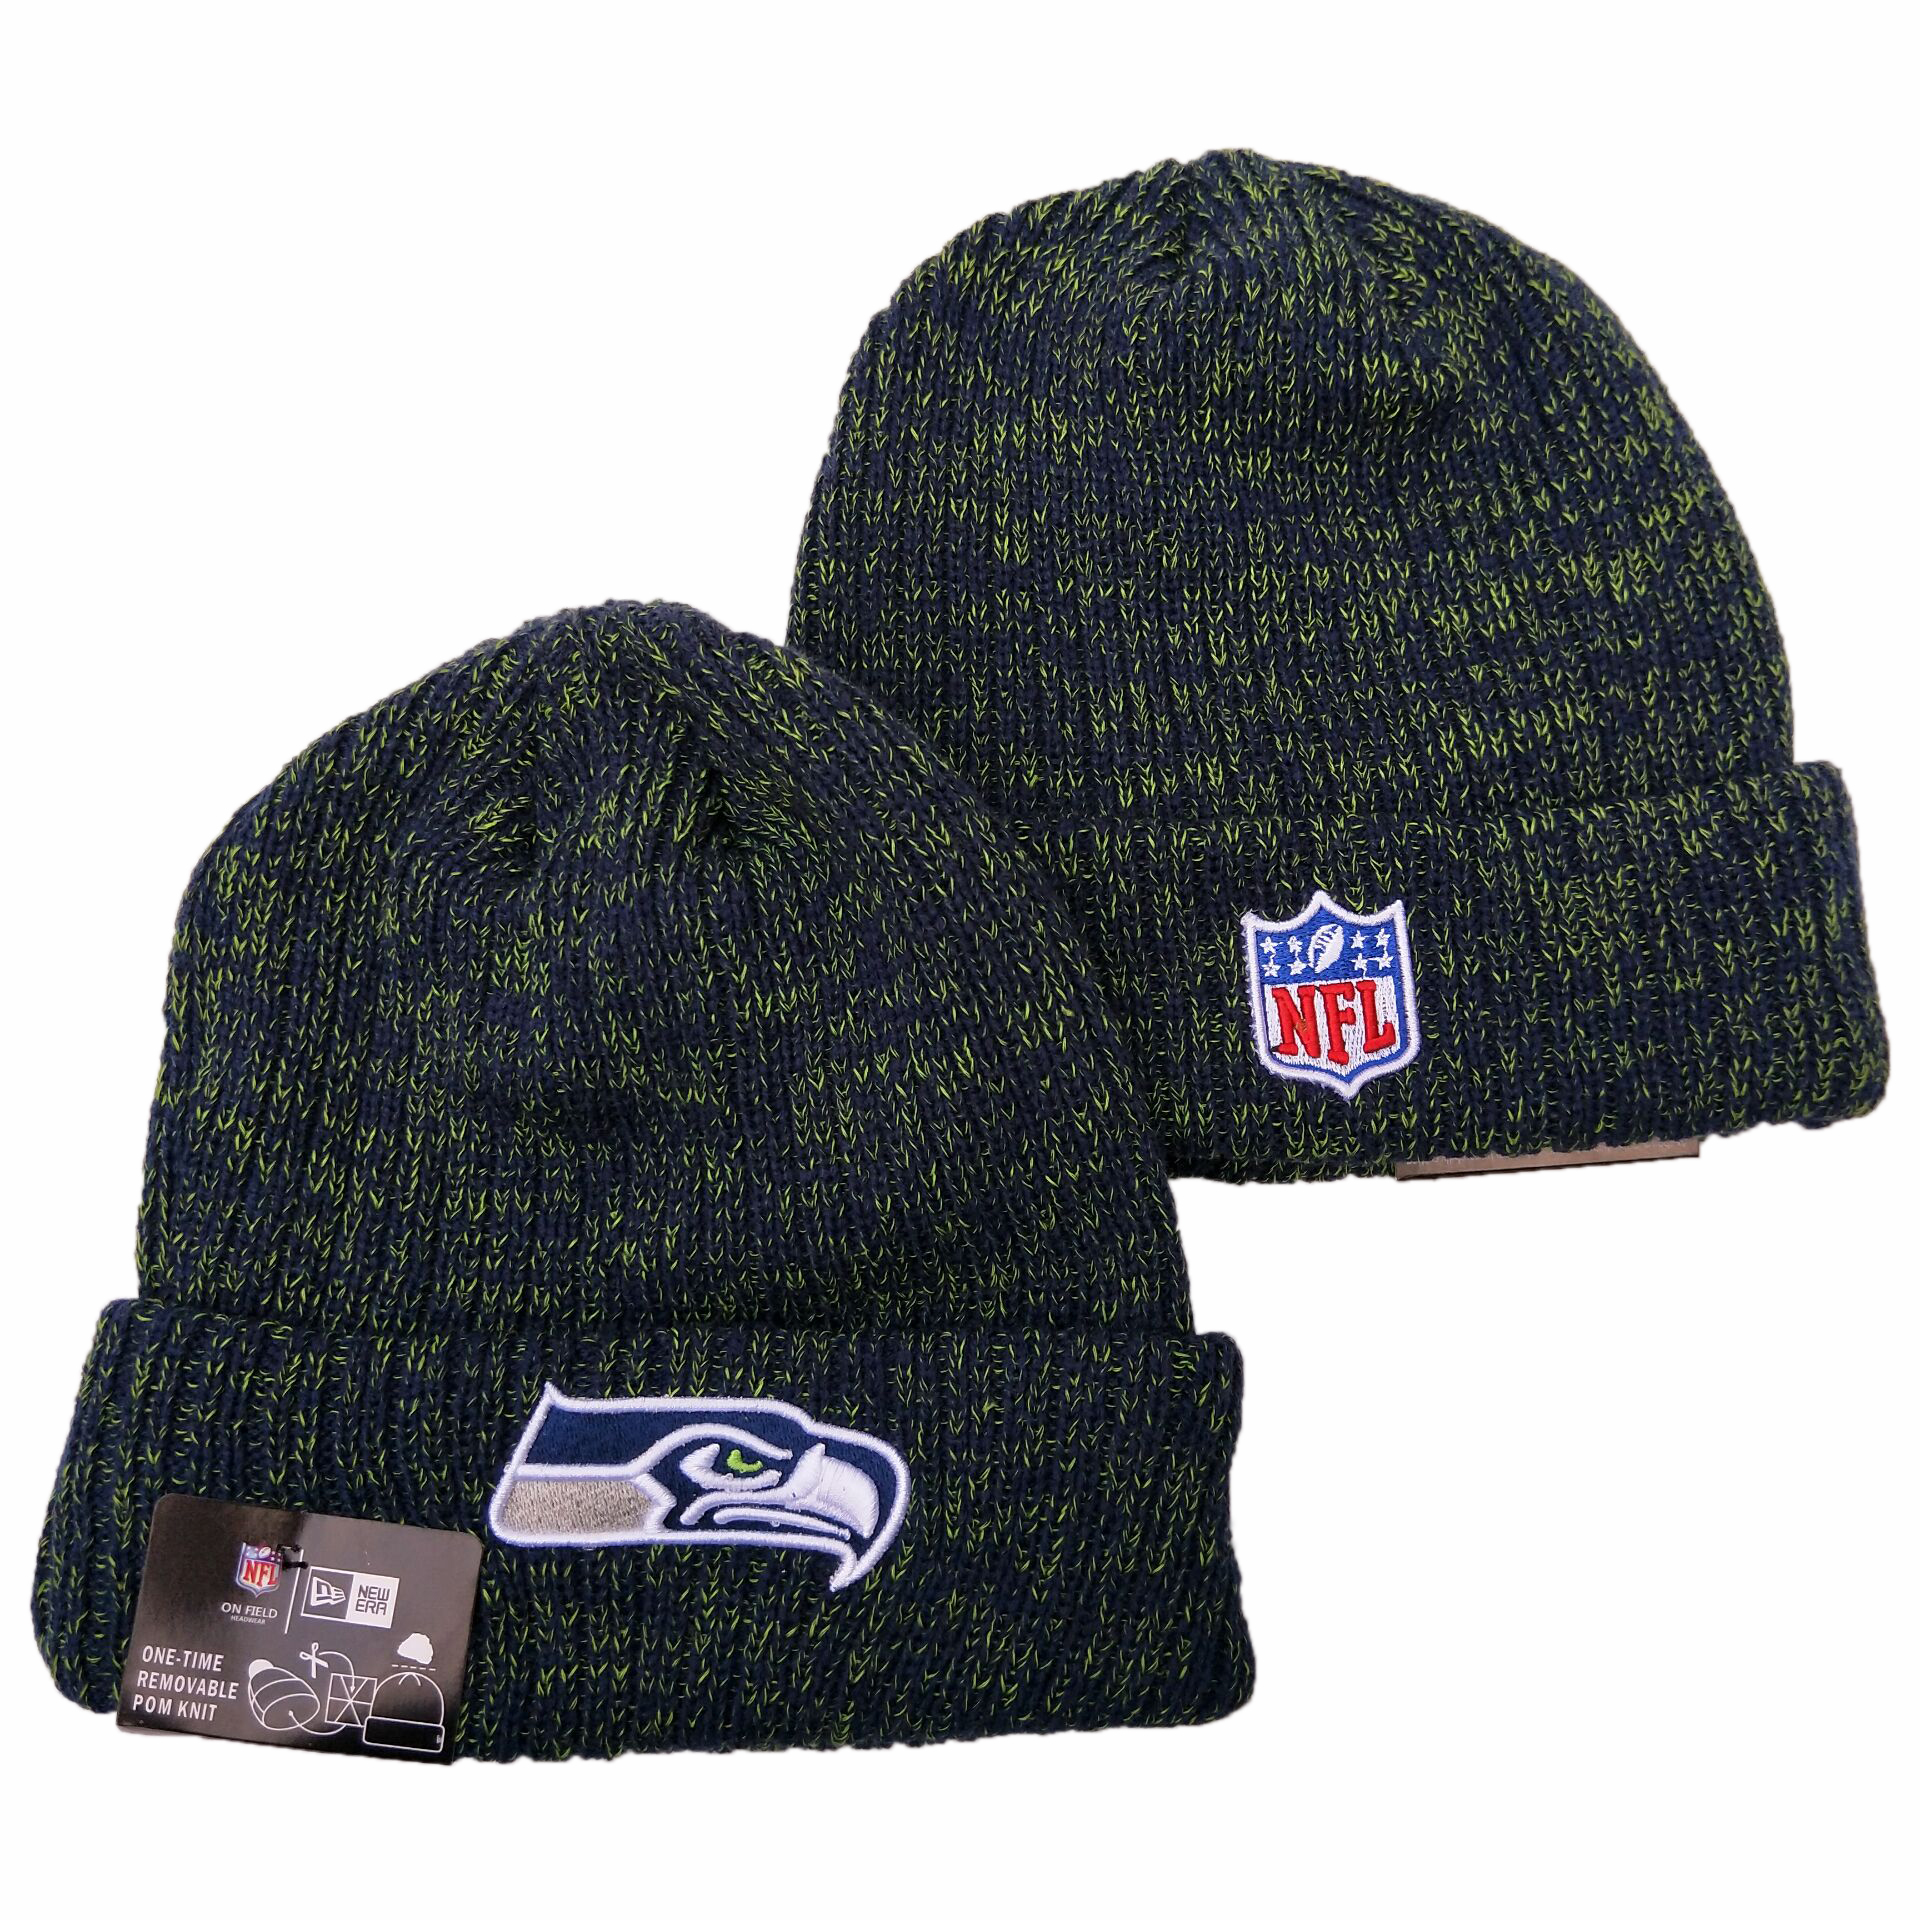 Seattle Seahawks Knit Hats 059